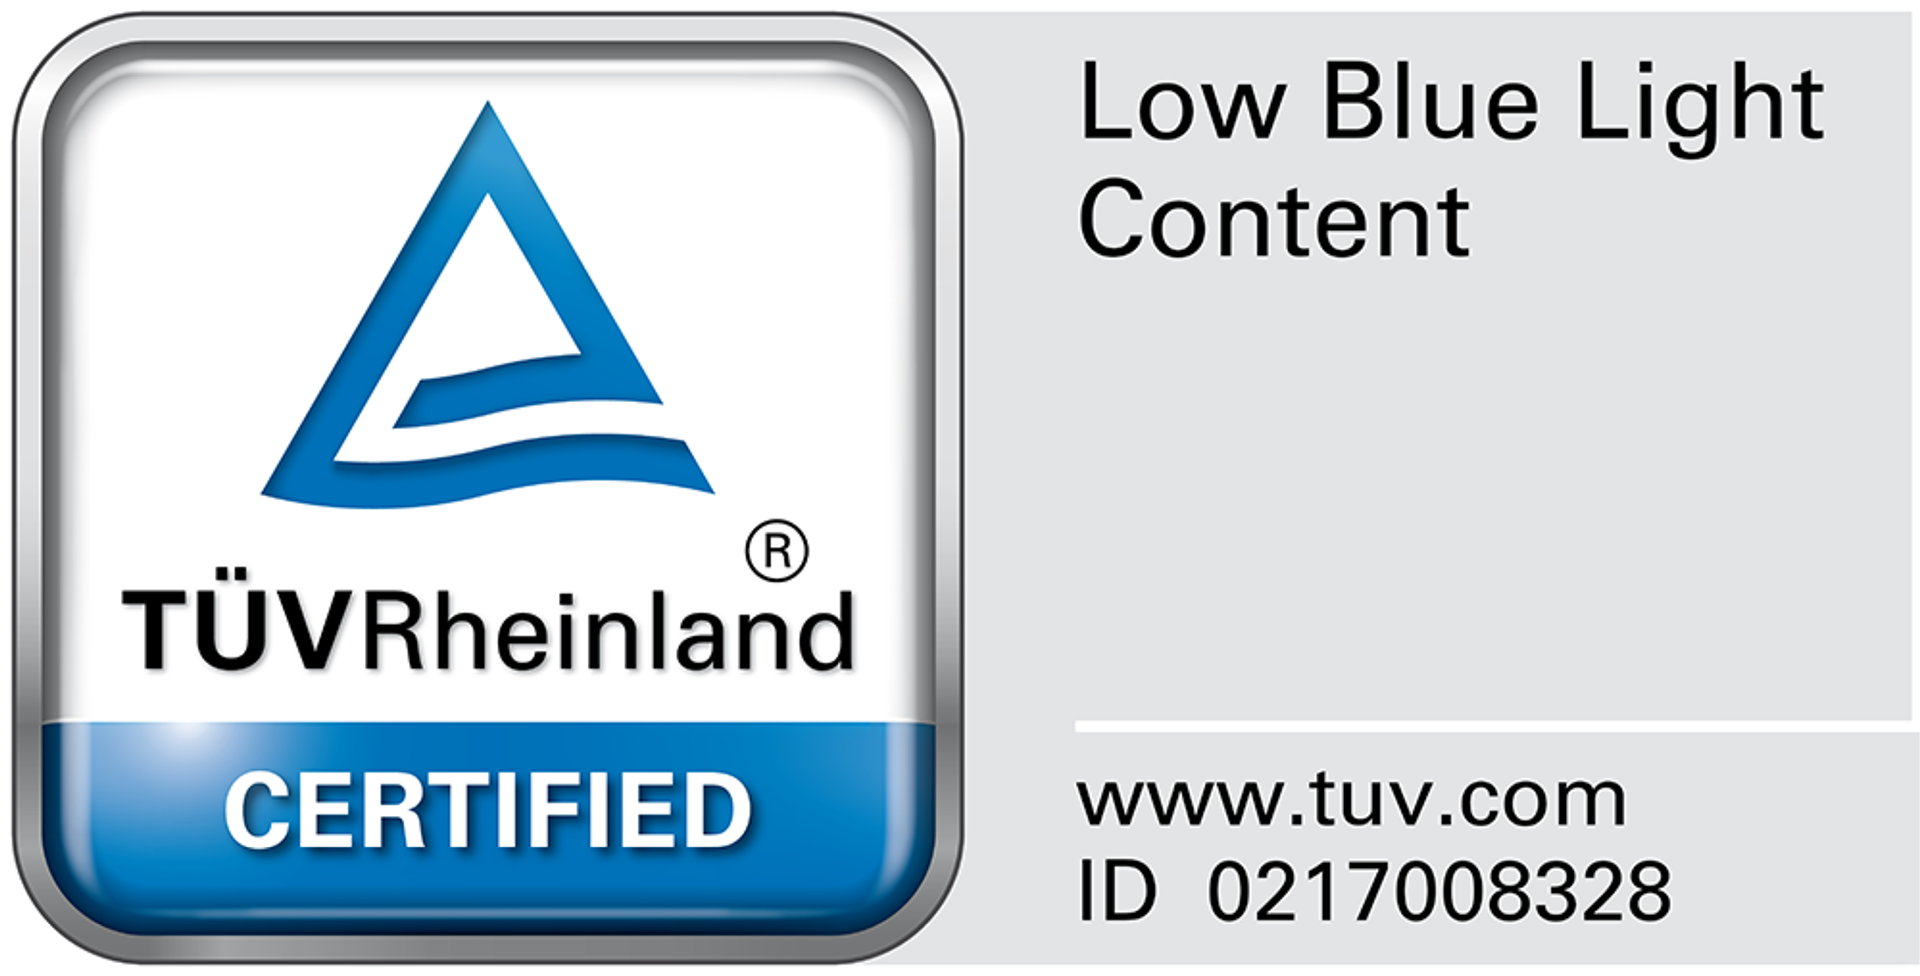 TÜV Rheinland-Zertifizierung für geringes blaues Licht (Hardwarelösung)